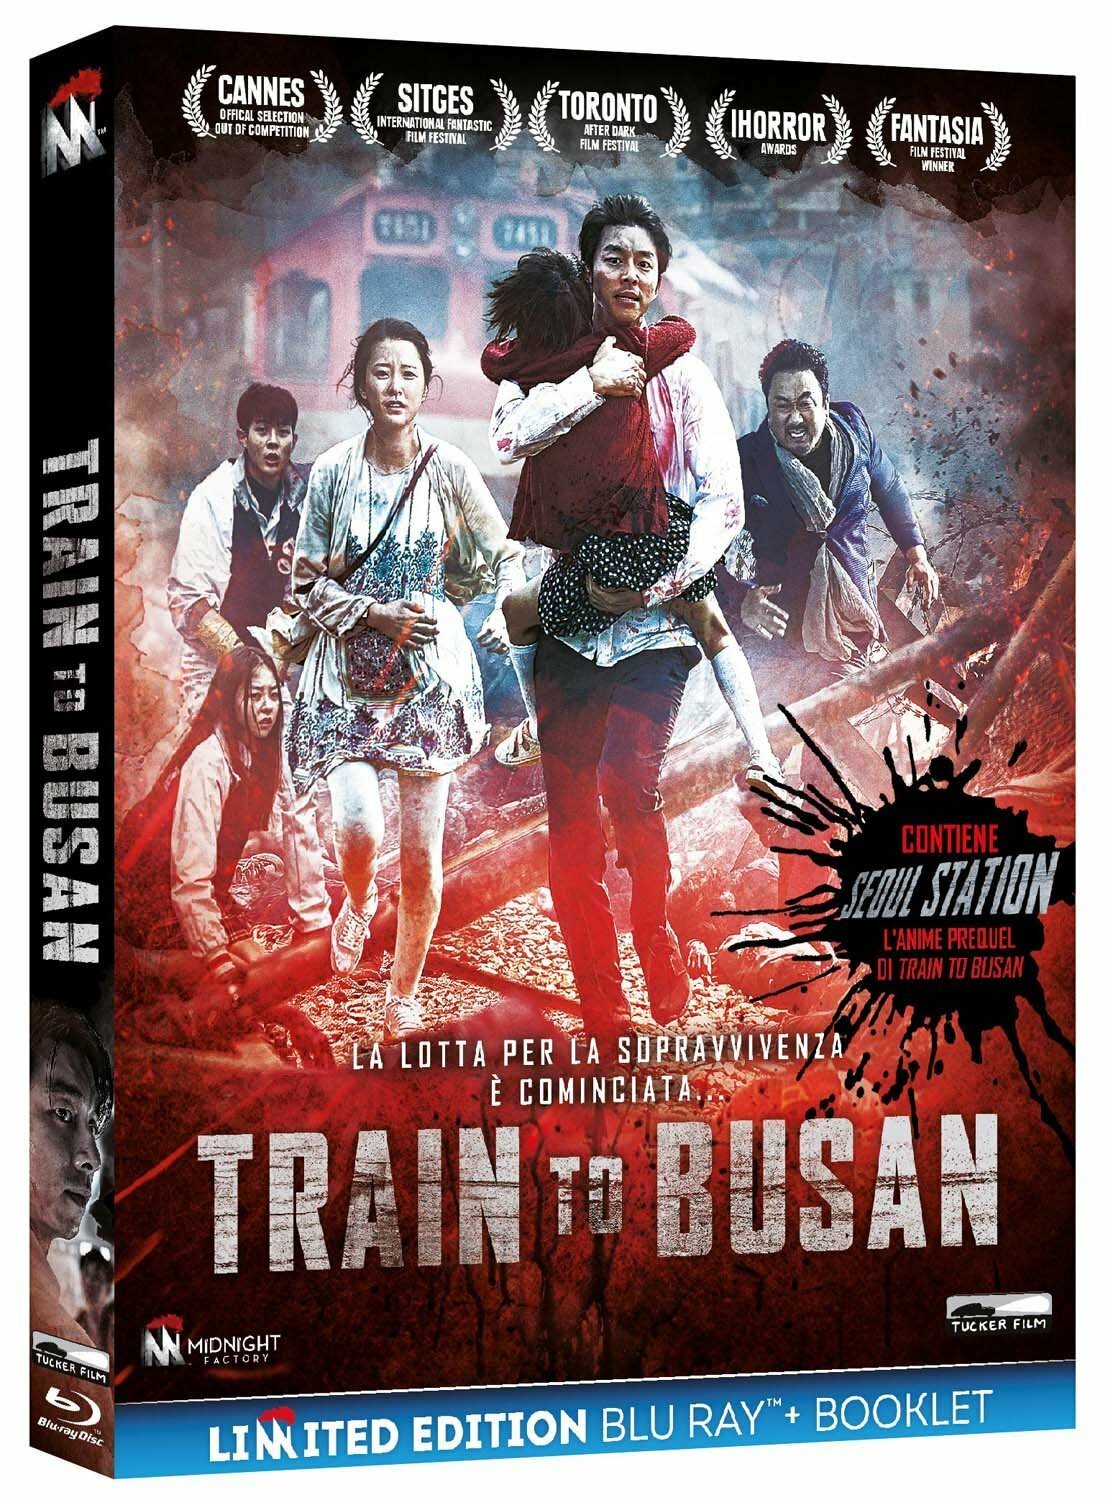 La cover italiana tutta rossa con scritte insanguinate di Train to Busan